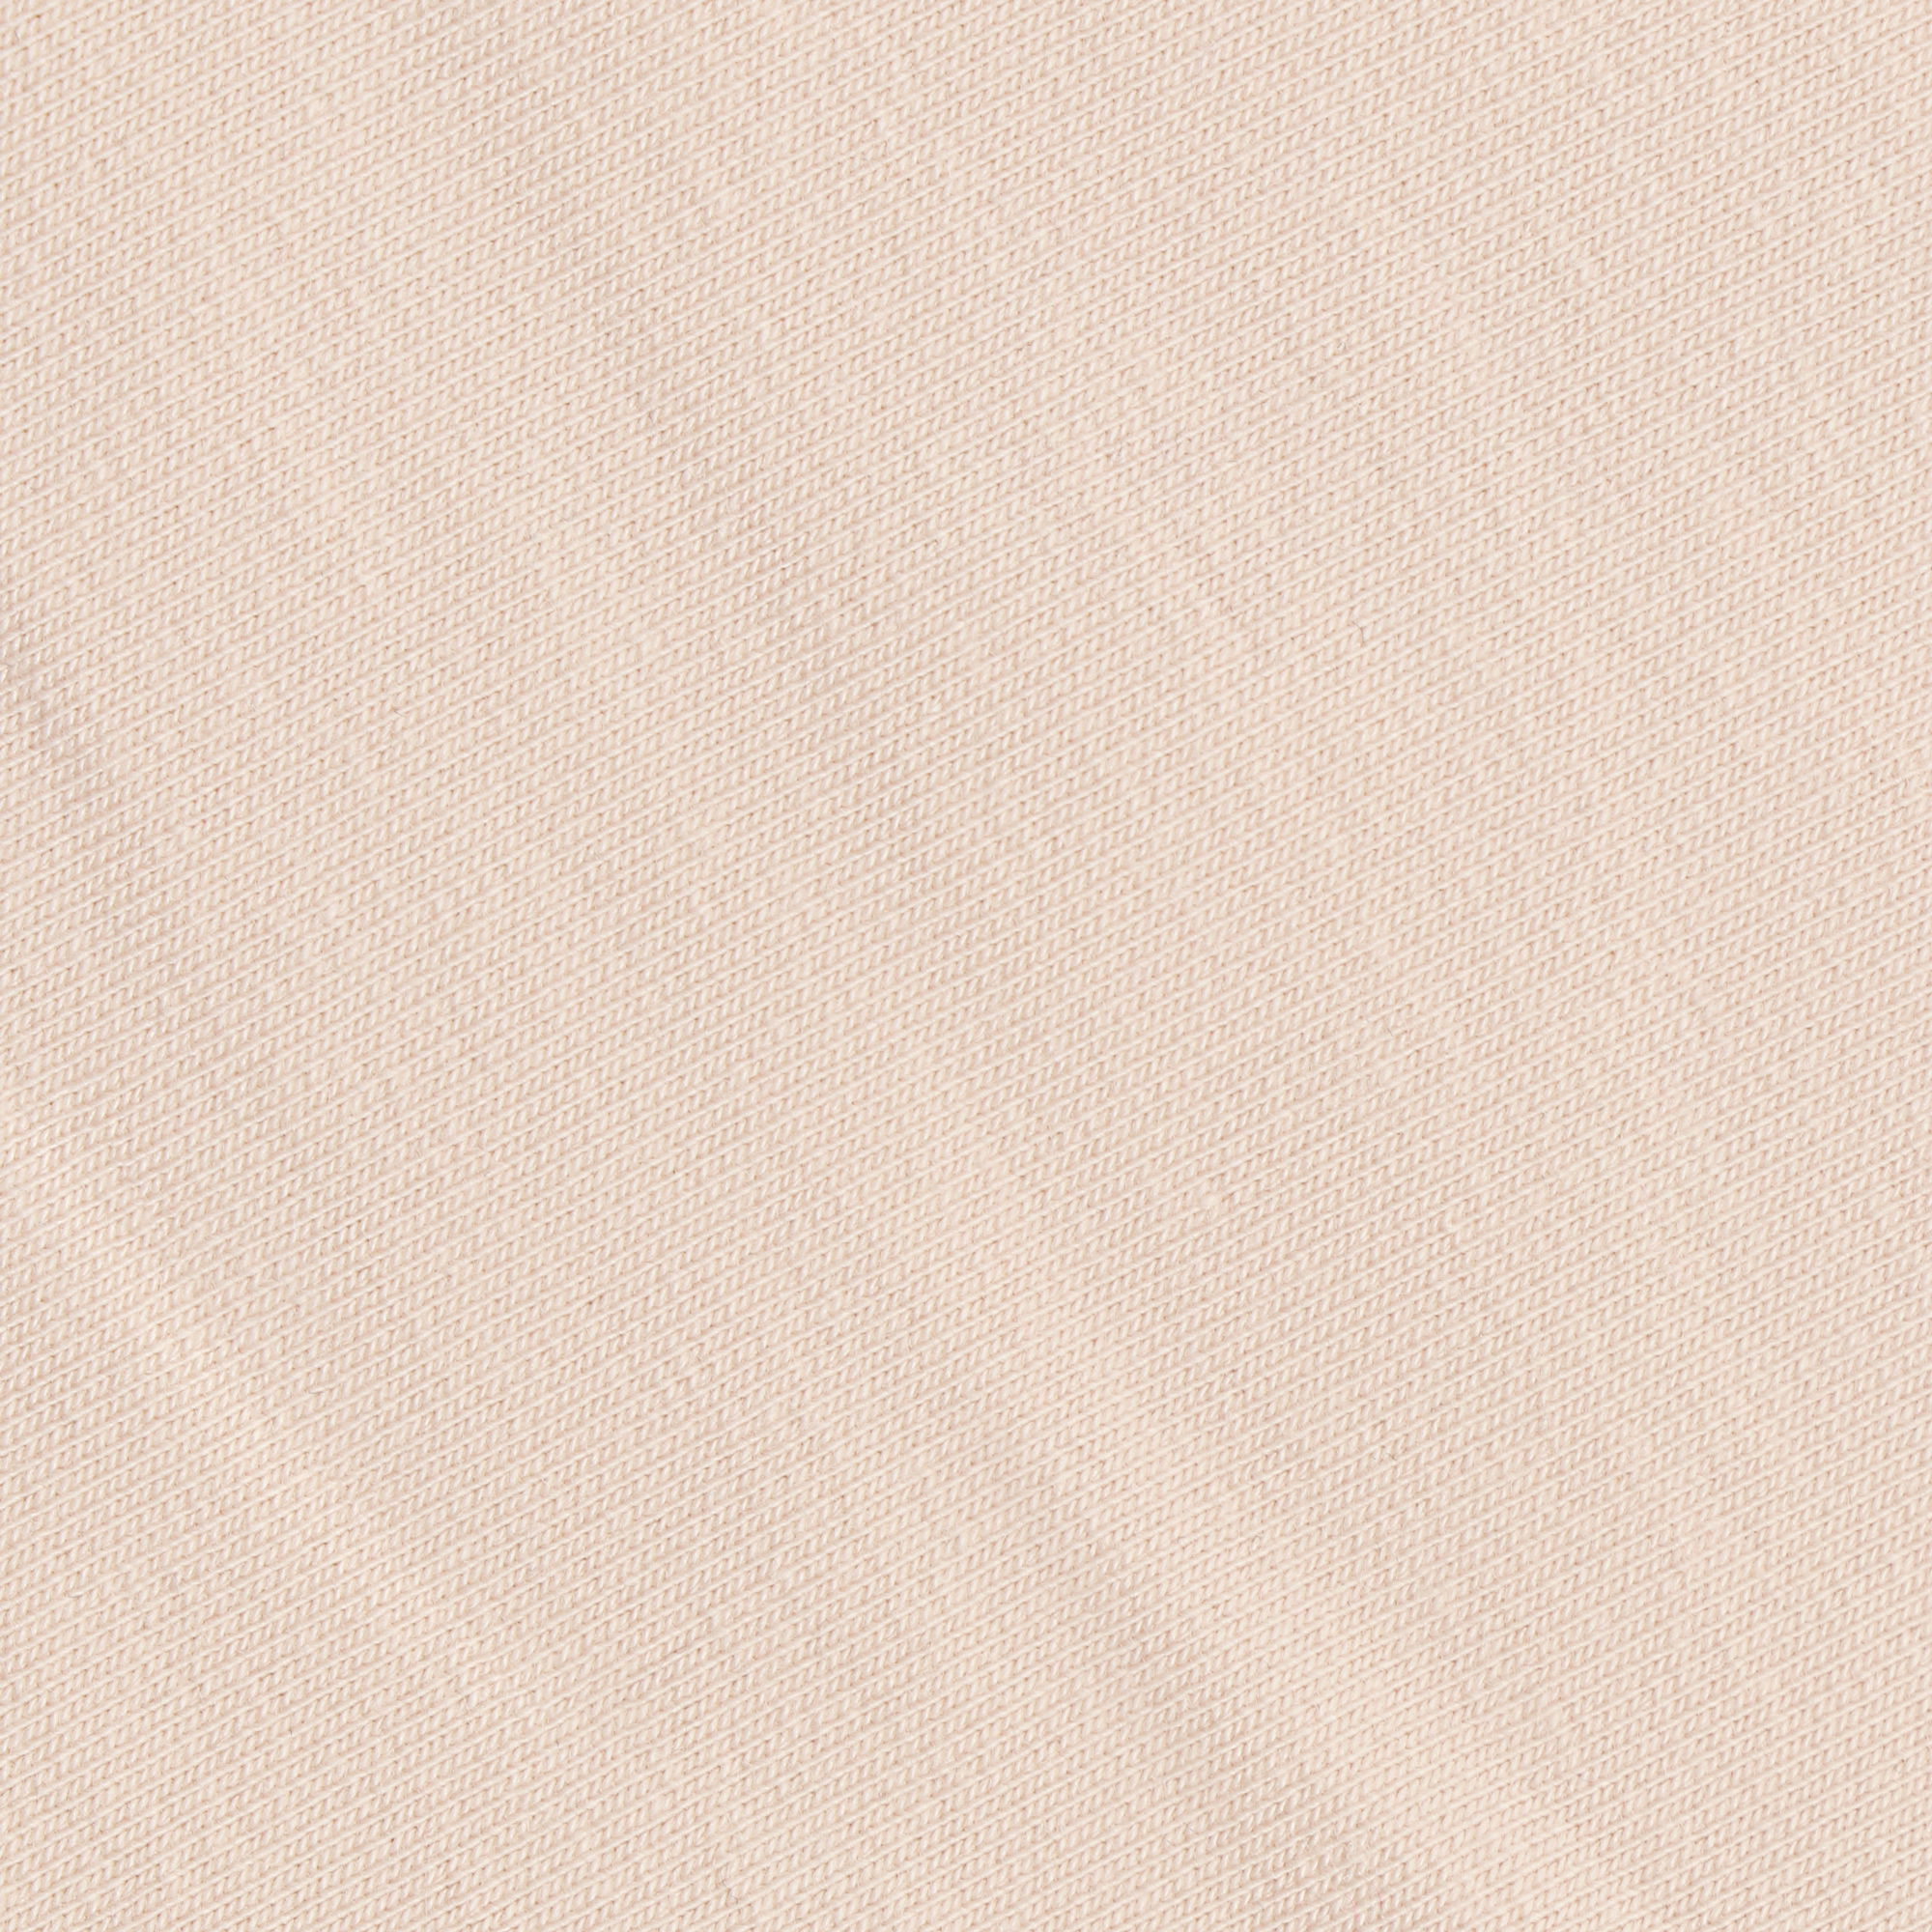 Женские брюки Birlik светло-бежевые, цвет светло-бежевый, размер XL - фото 2